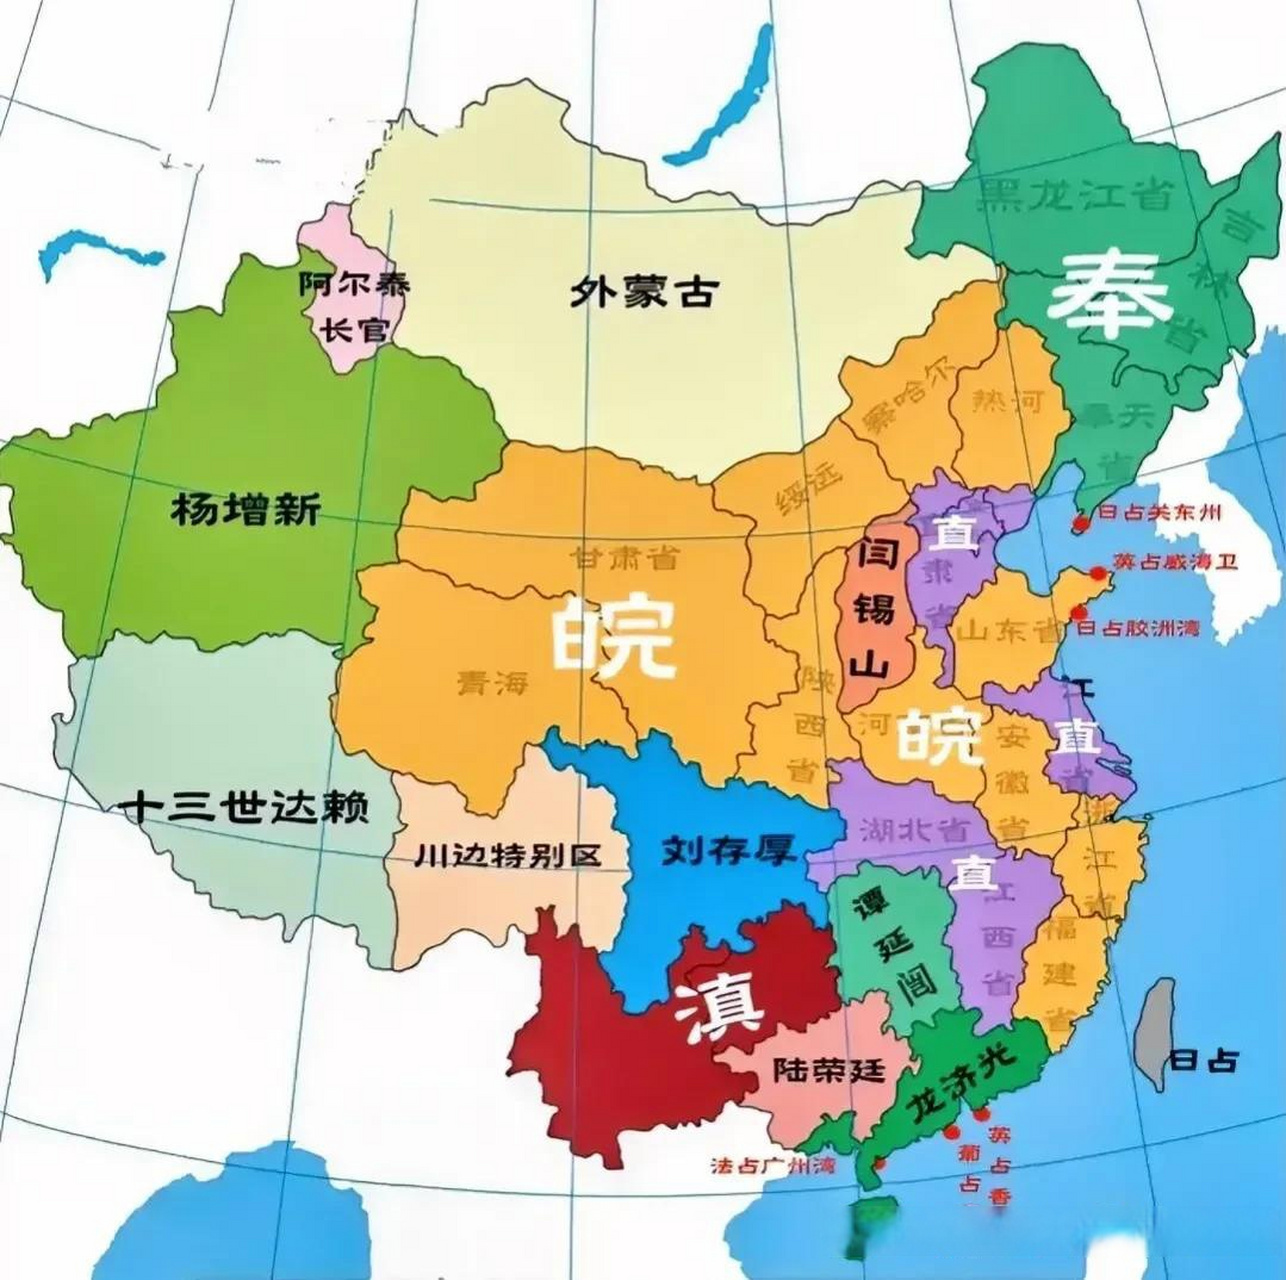 民国时期各派军阀盘踞示意图, 其中皖系军阀地盘是最大,从华东地区到